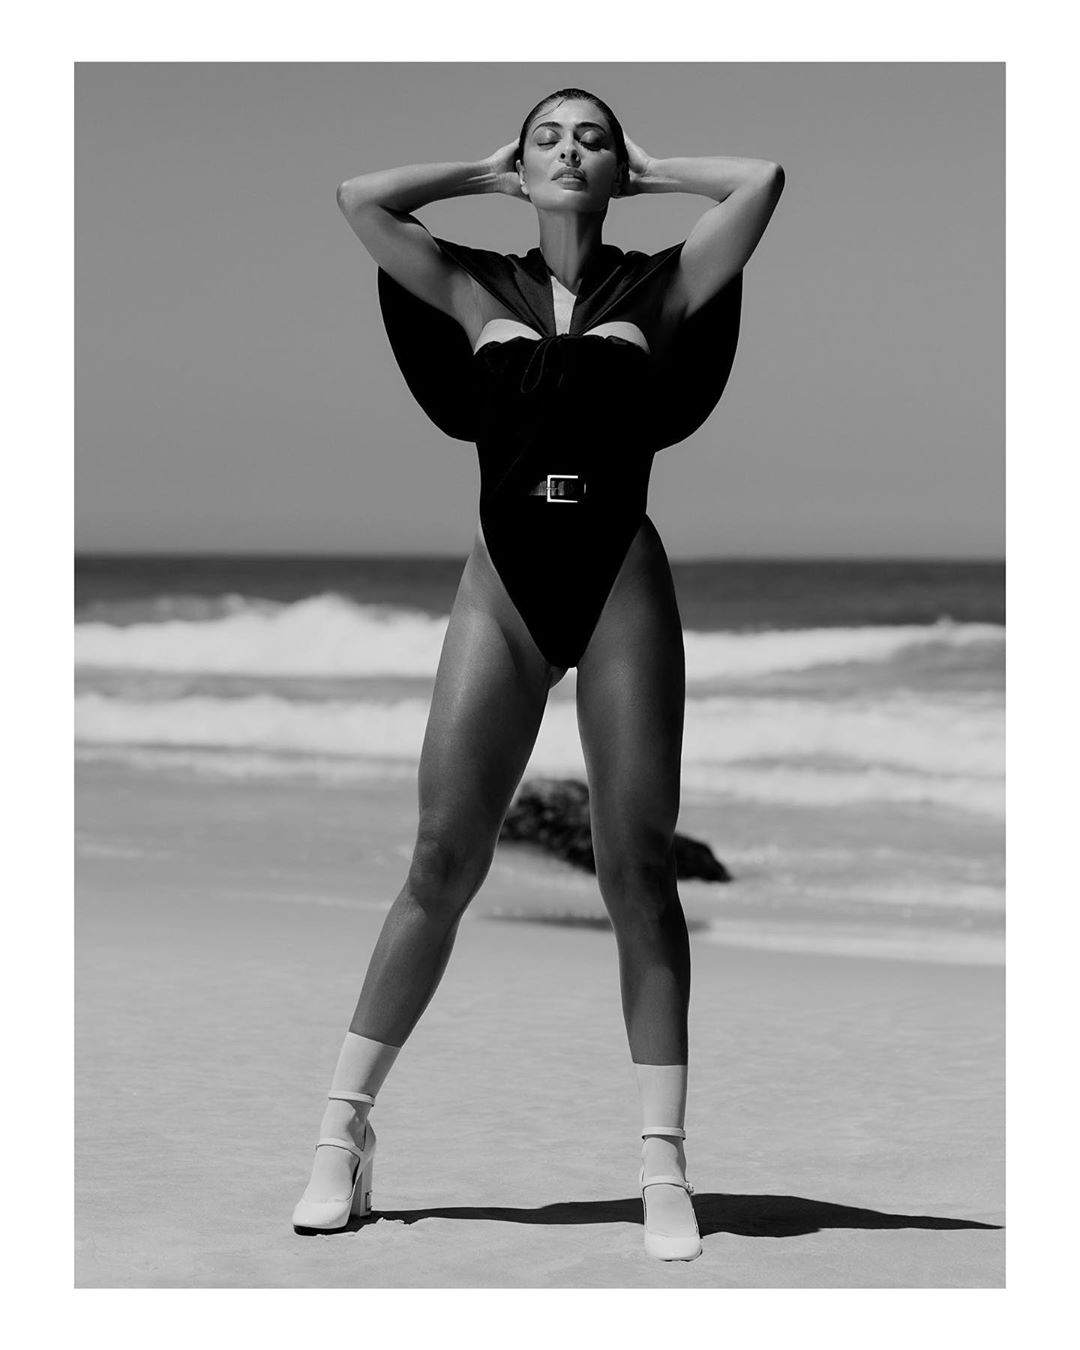 Aos 41 anos, Juliana Paes ostenta curvas poderosas em foto com maiô cavado